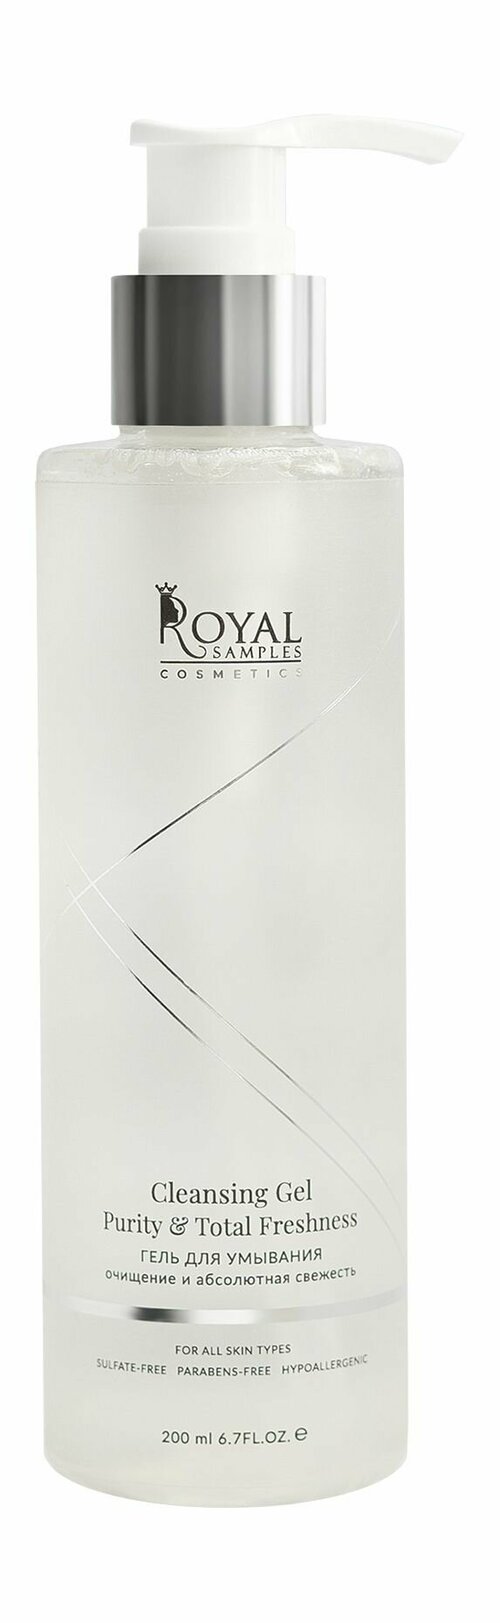 Очищающий гель для умывания / Royal Samples Purity and Total Freshness Cleansing Gel